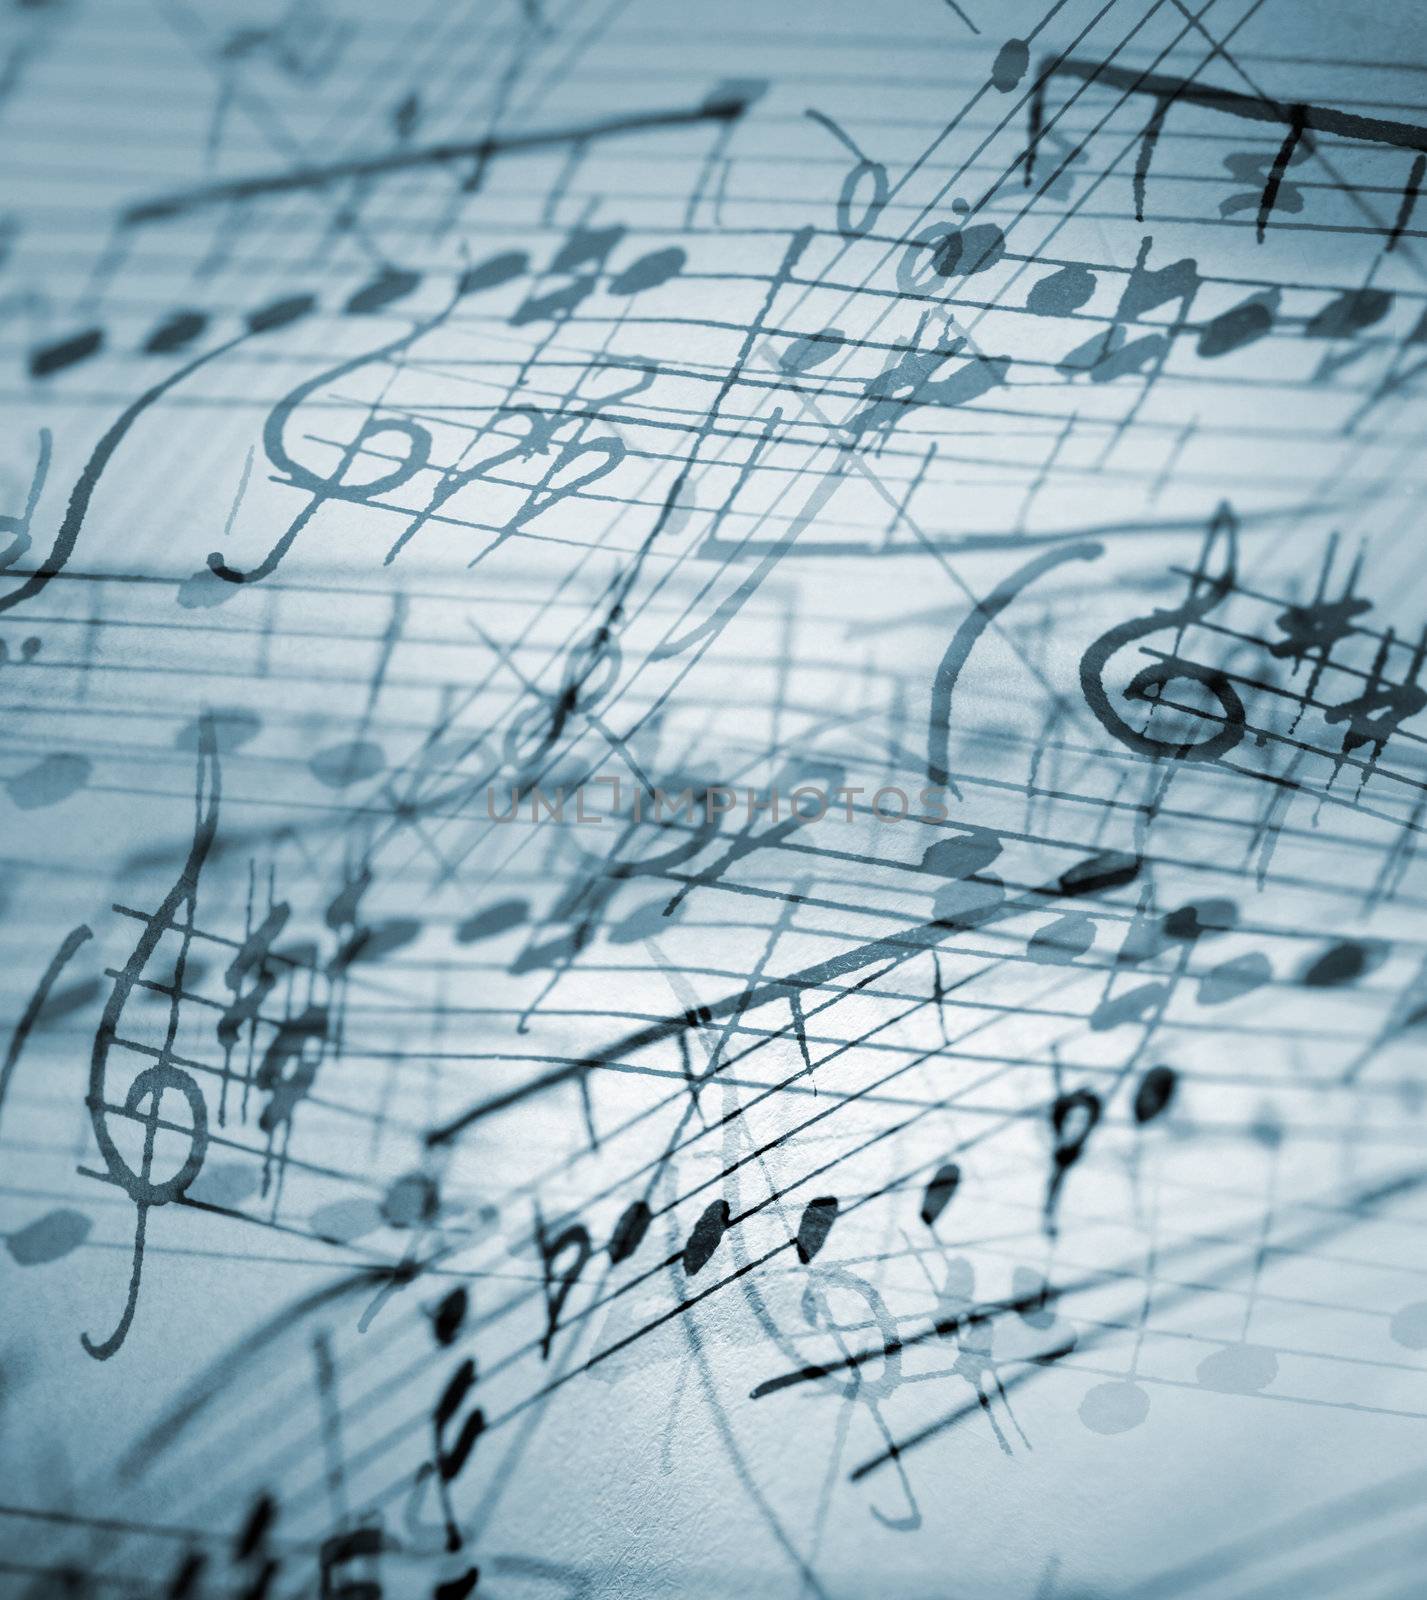 hand-written musical notation background.